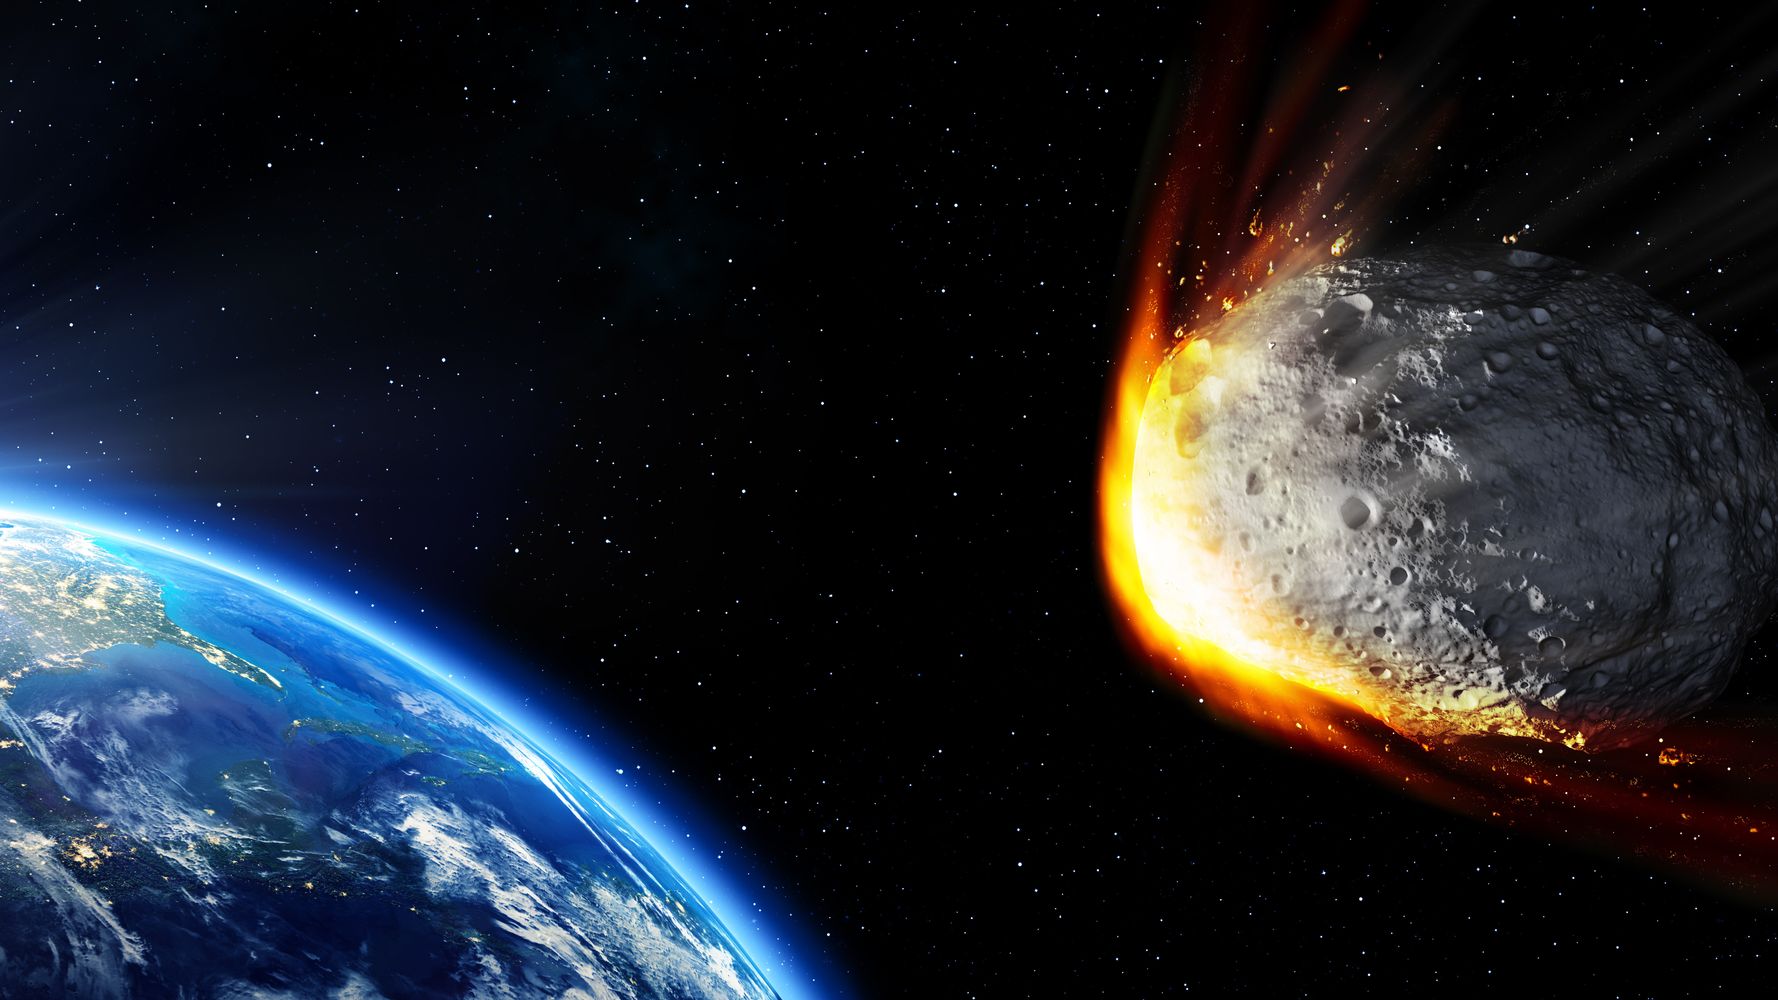 小惑星 19 Ok が地球近くを通過していた 衝突すれば東京23区が壊滅する規模 ハフポスト